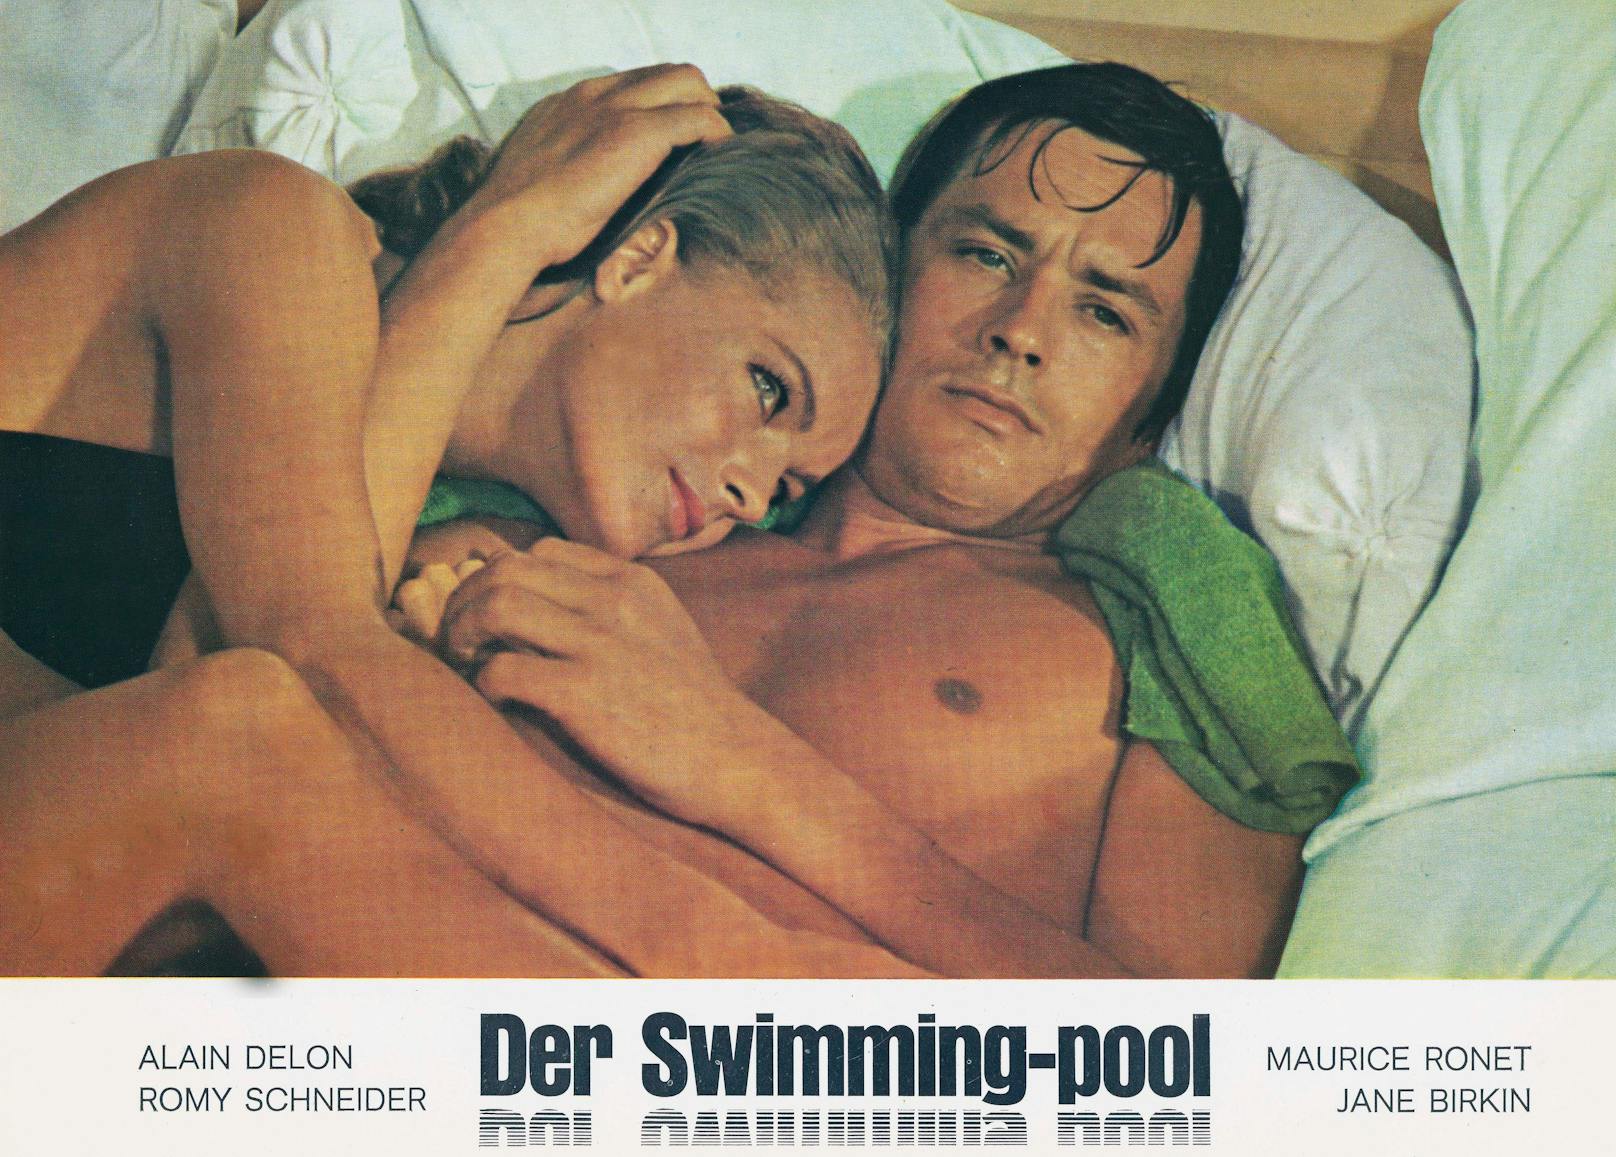 Alain Delon spielte mit Romy Schneider sogar in mehreren Filmen. Sie standen gemeinsam für "Christine" (1958), "Der Swimmingpool" (1969) und "Nur die Sonne war Zeuge" (1960) vor der Kamera.